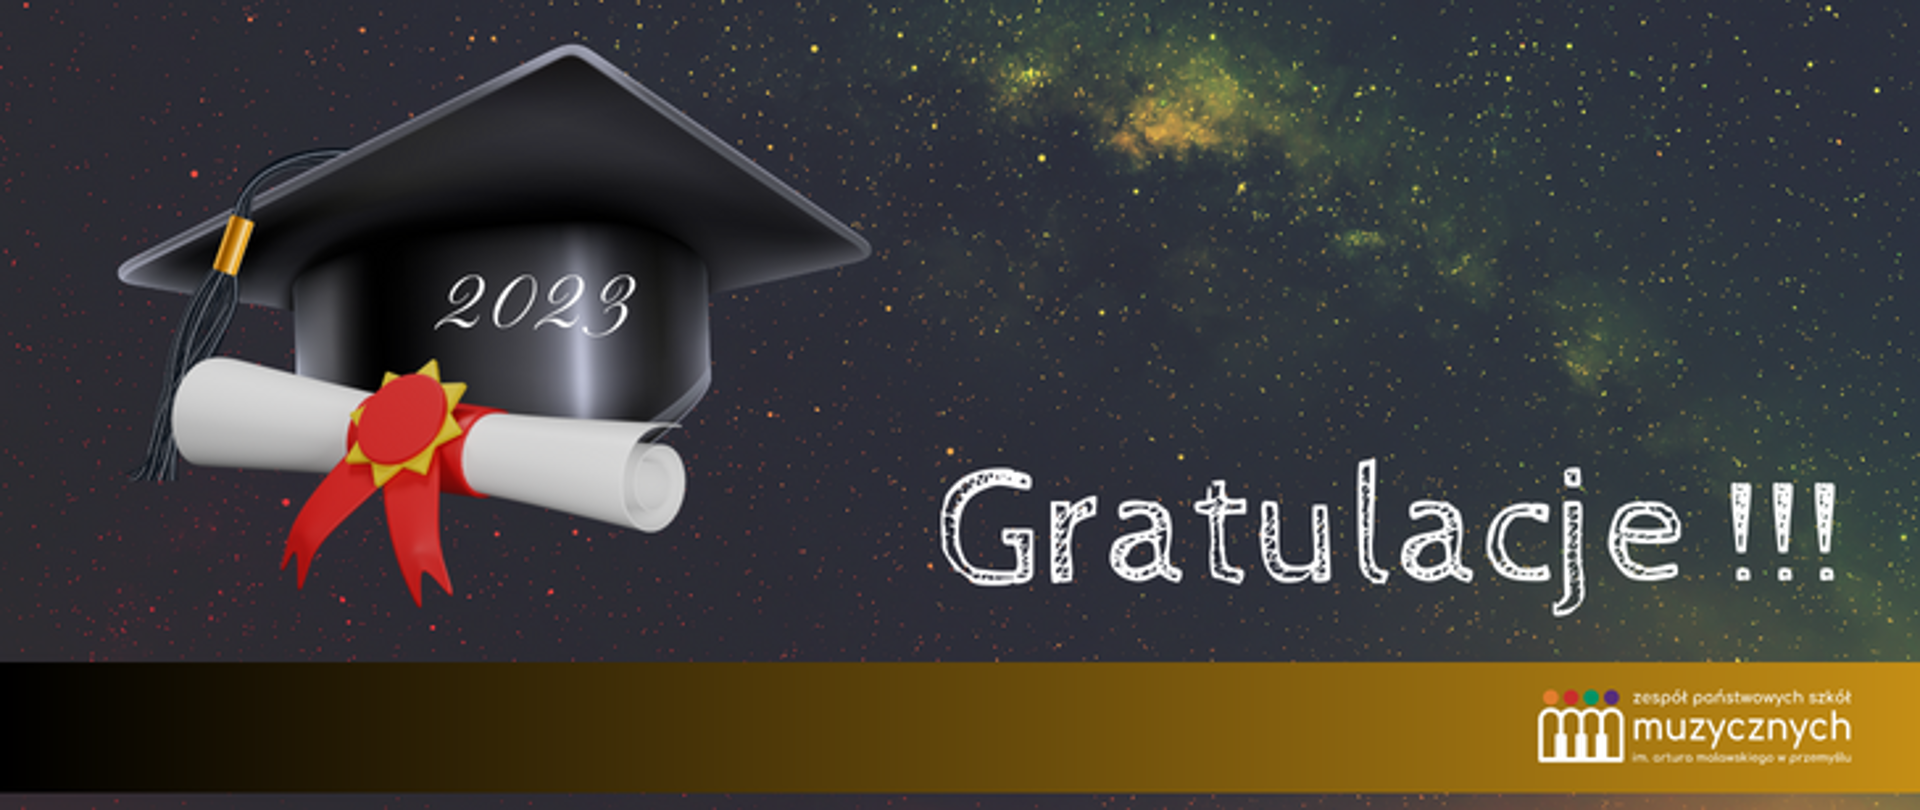 Na tle nieba z gwiazdami grafika czapki absolwenta, wraz ze zwiniętym dyplomem oraz napis Gratulacje. Pod spodem na brązowym pasku logo szkoły. 